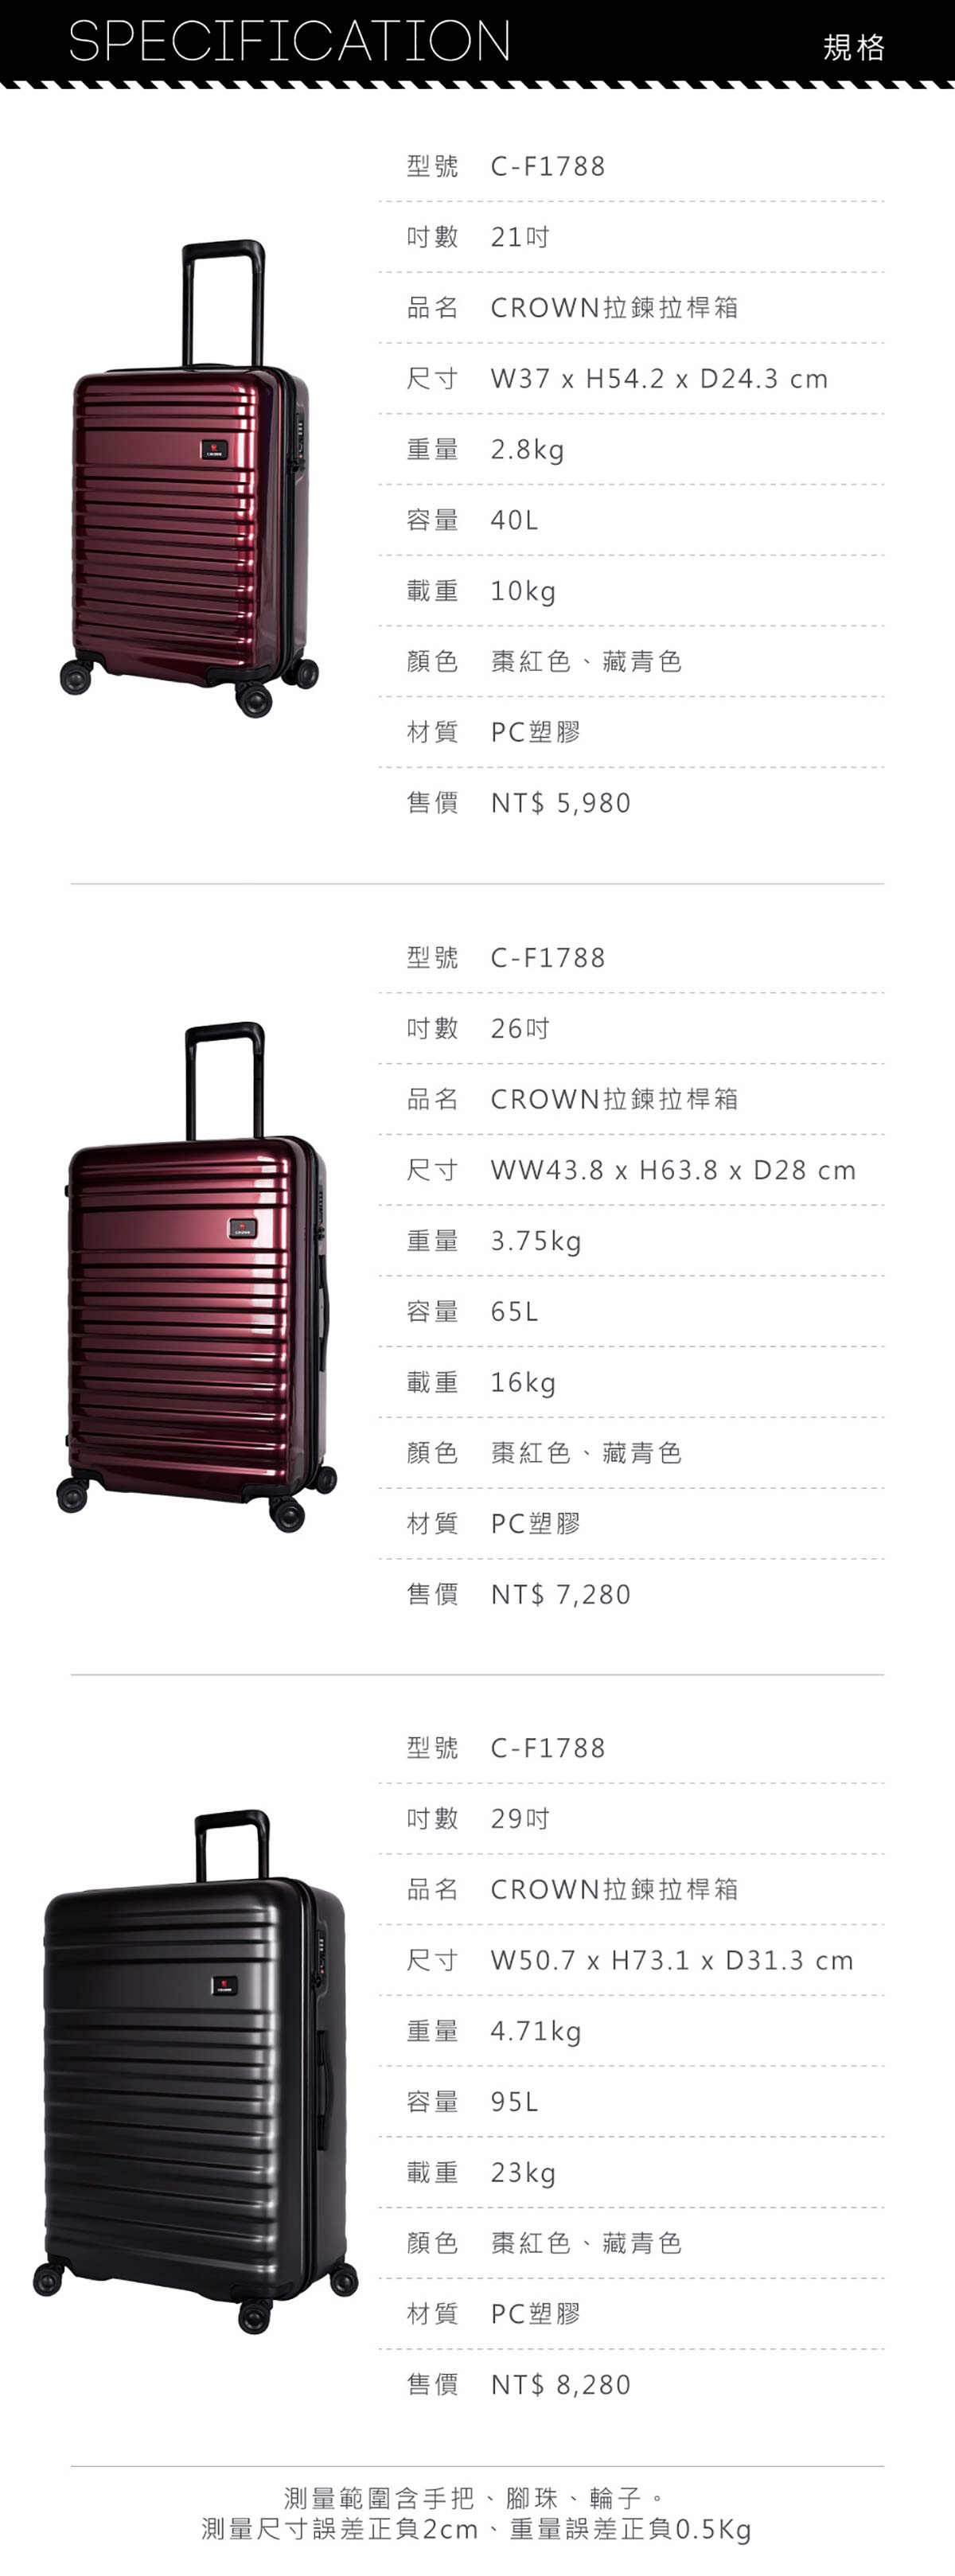 CROWN 26+29 吋行李箱，一共有3種尺寸選擇。